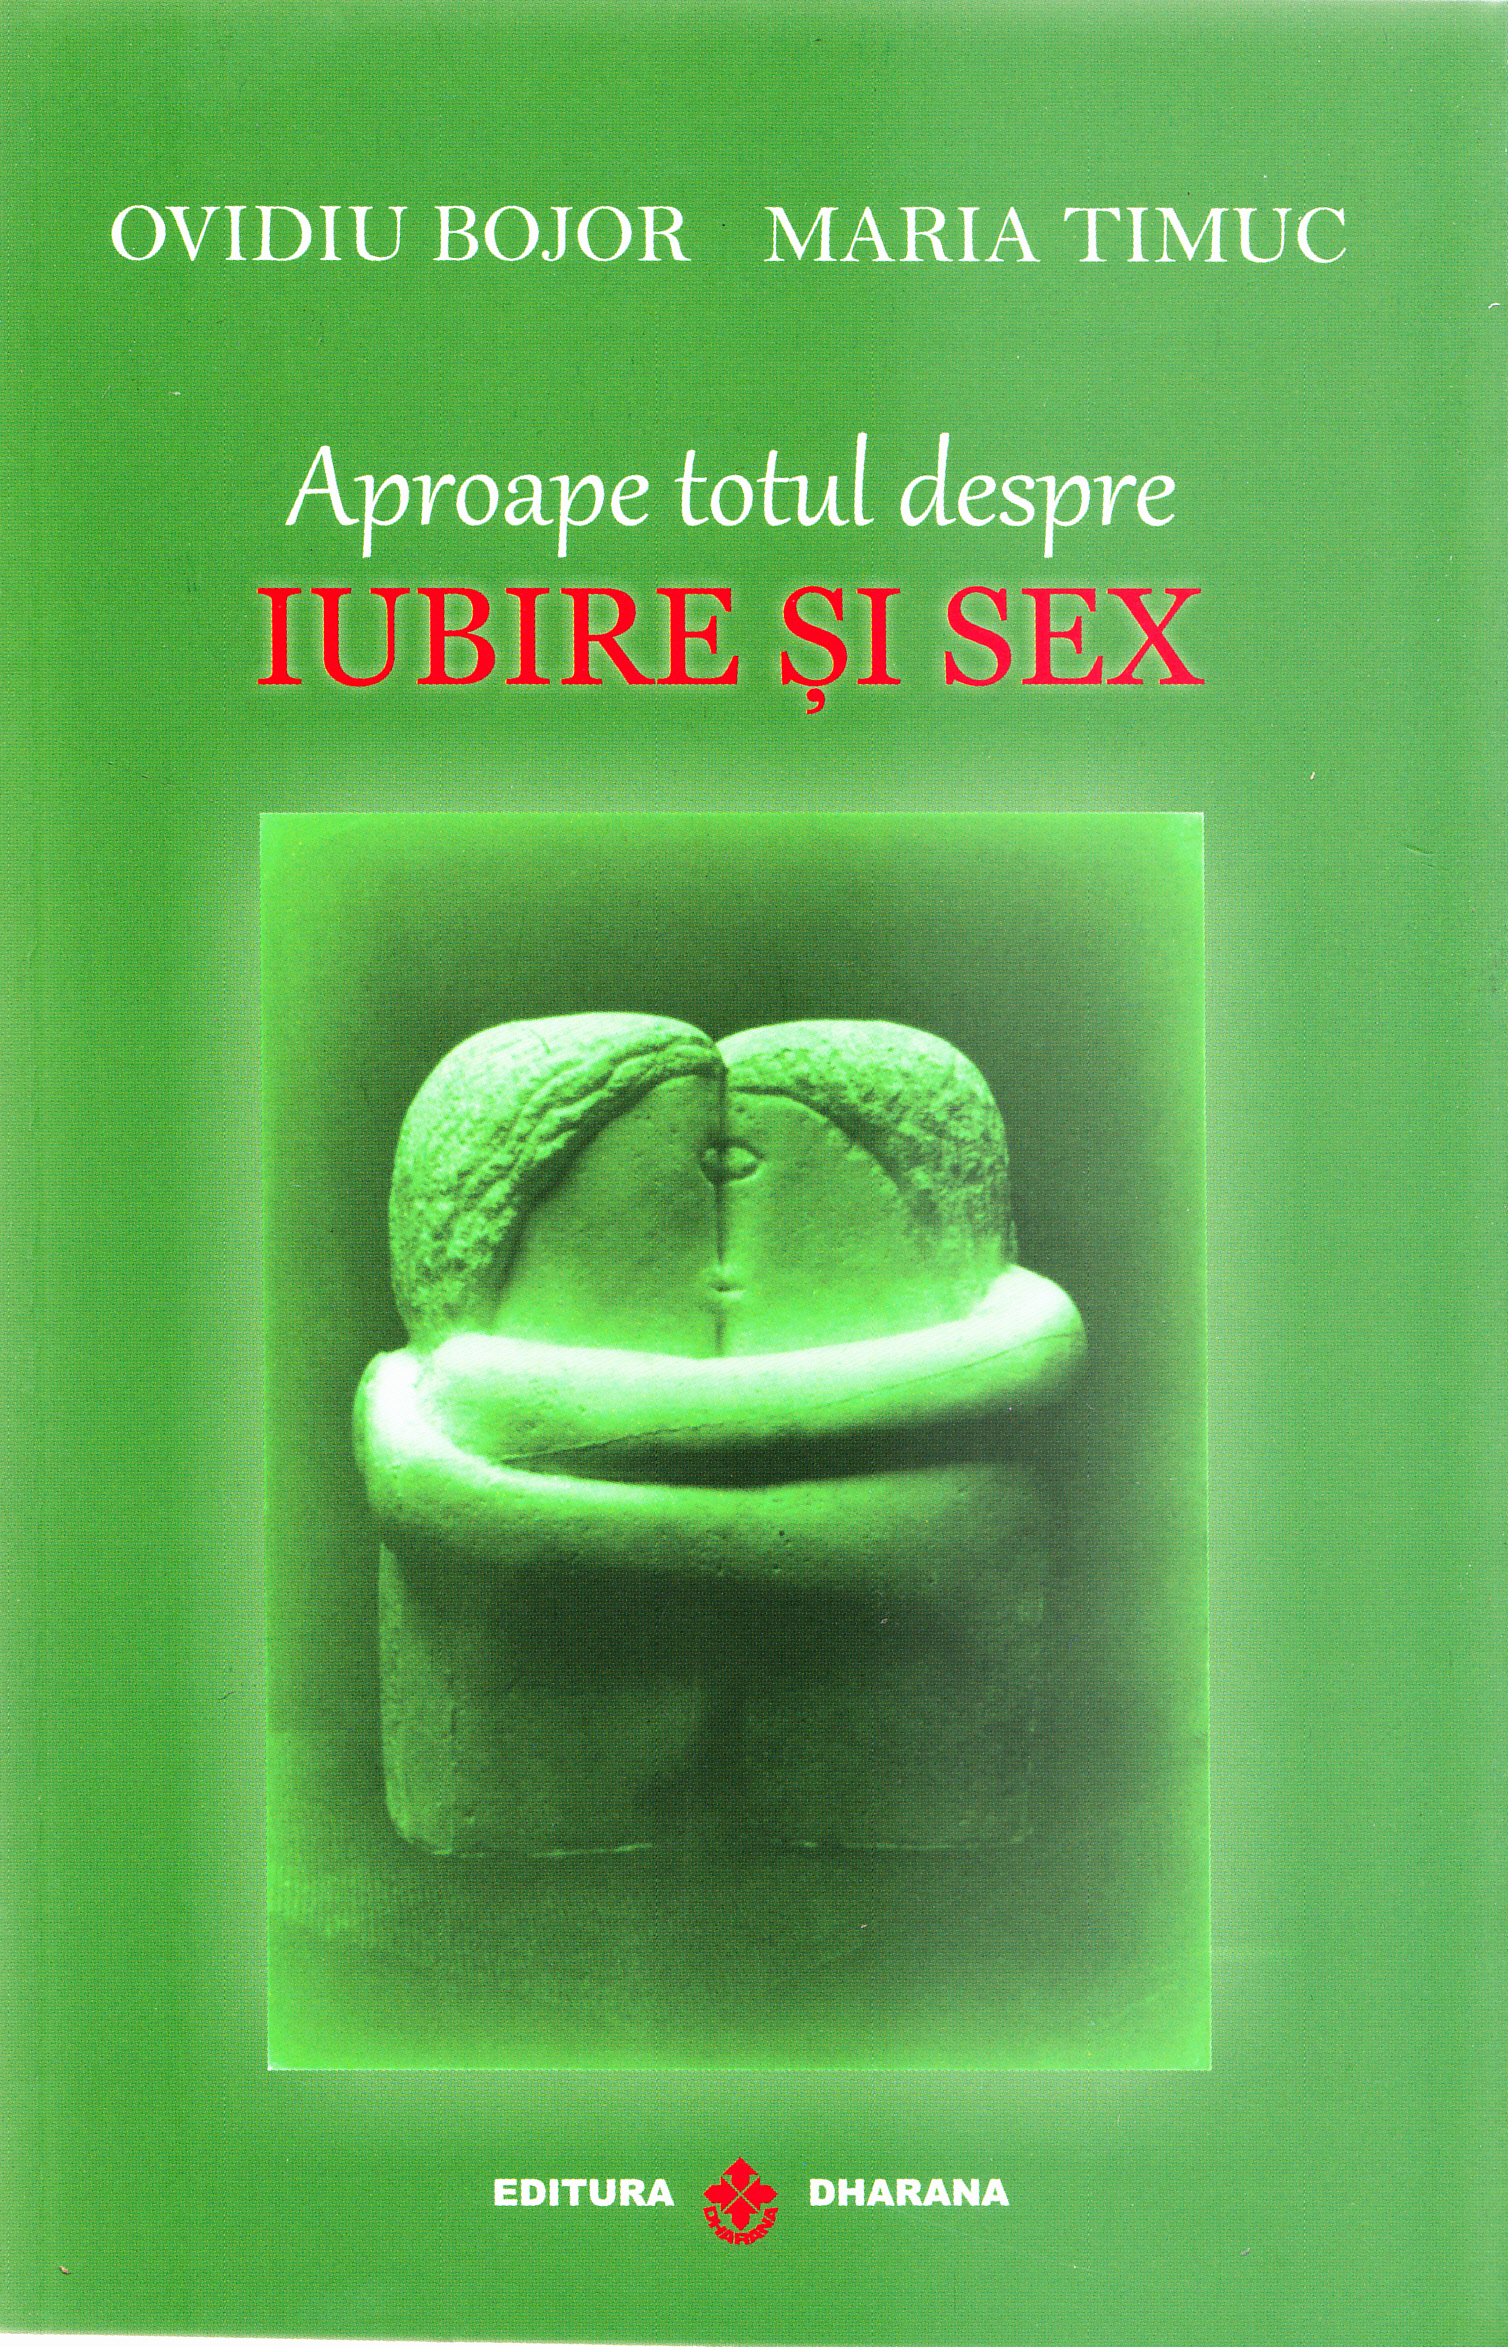 Aproape totul despre iubire si sex | Ovidiu Bojor, Maria Timuc carturesti.ro imagine 2022